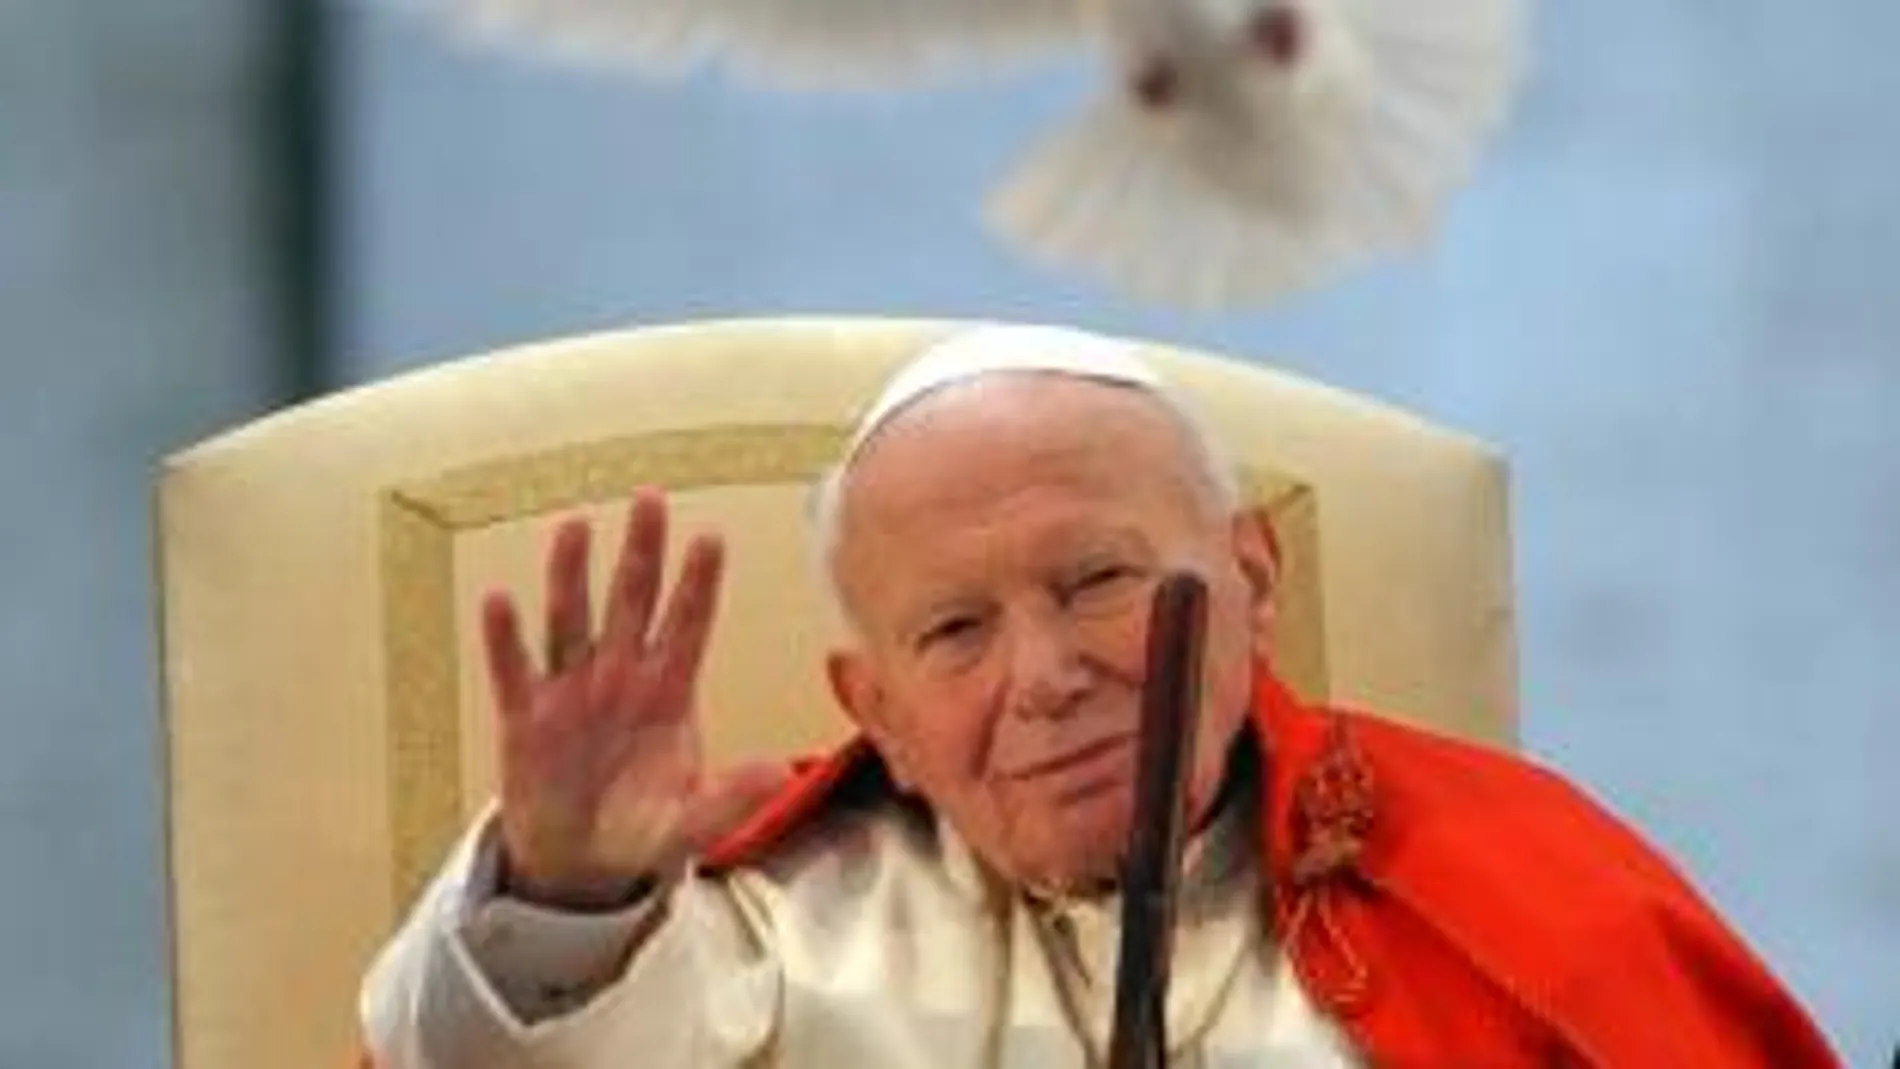 El proceso comenzó en junio de 2005, sólo dos meses después de la muerte de Juan Pablo II